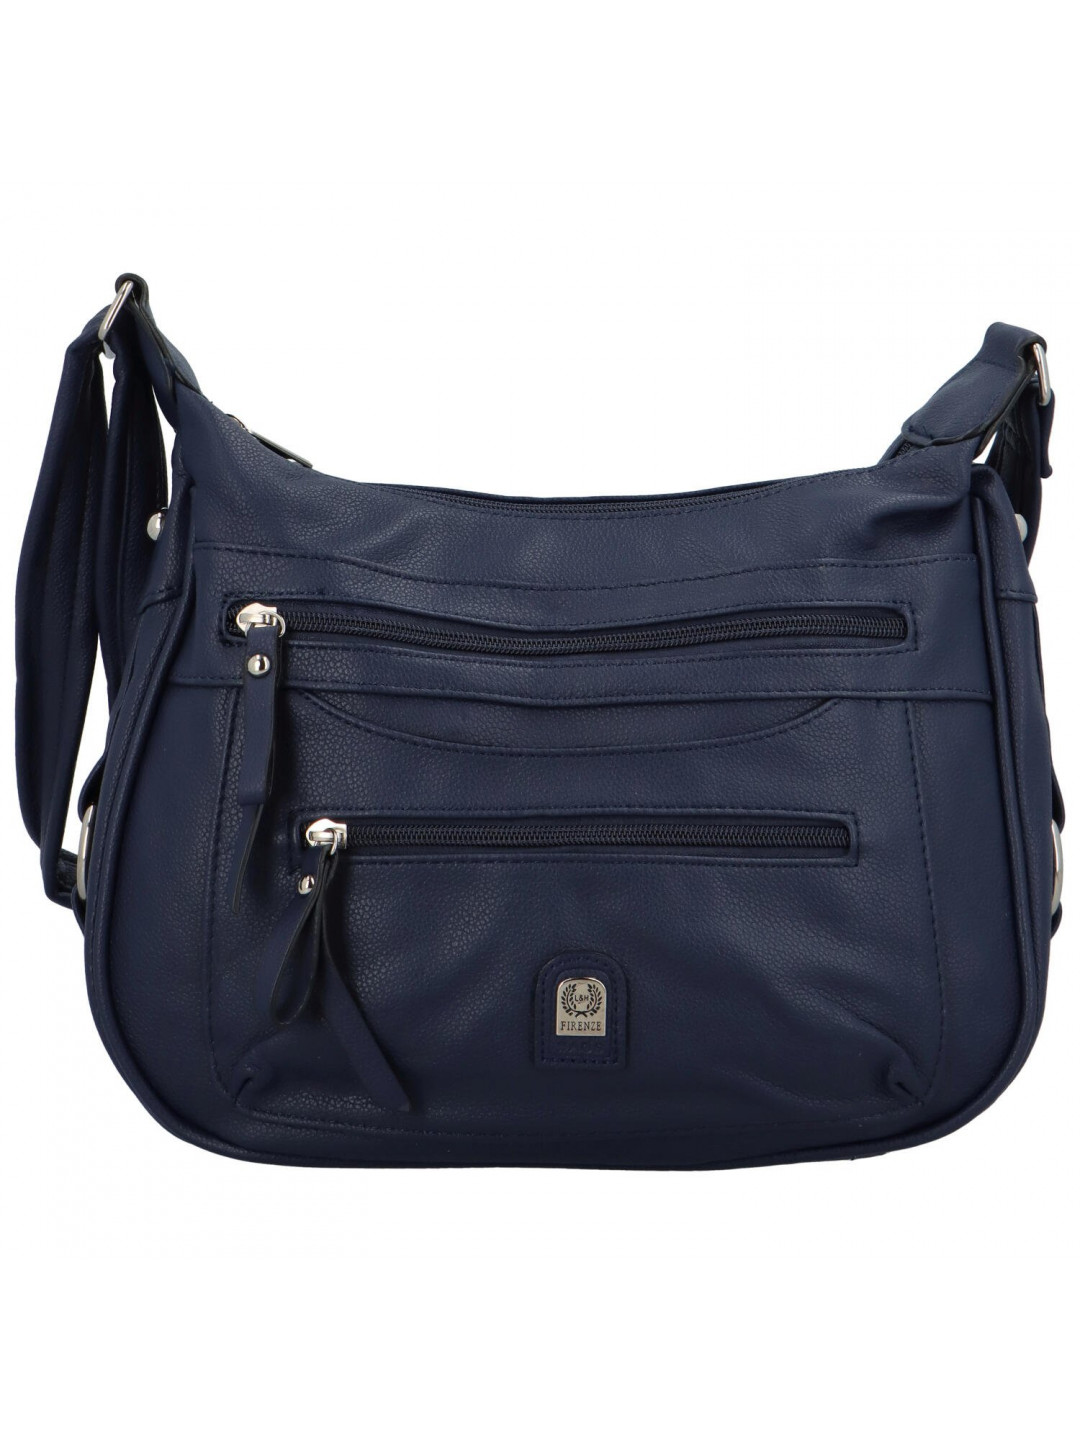 Dámská kabelka na rameno tmavě modrá – Firenze Ennis